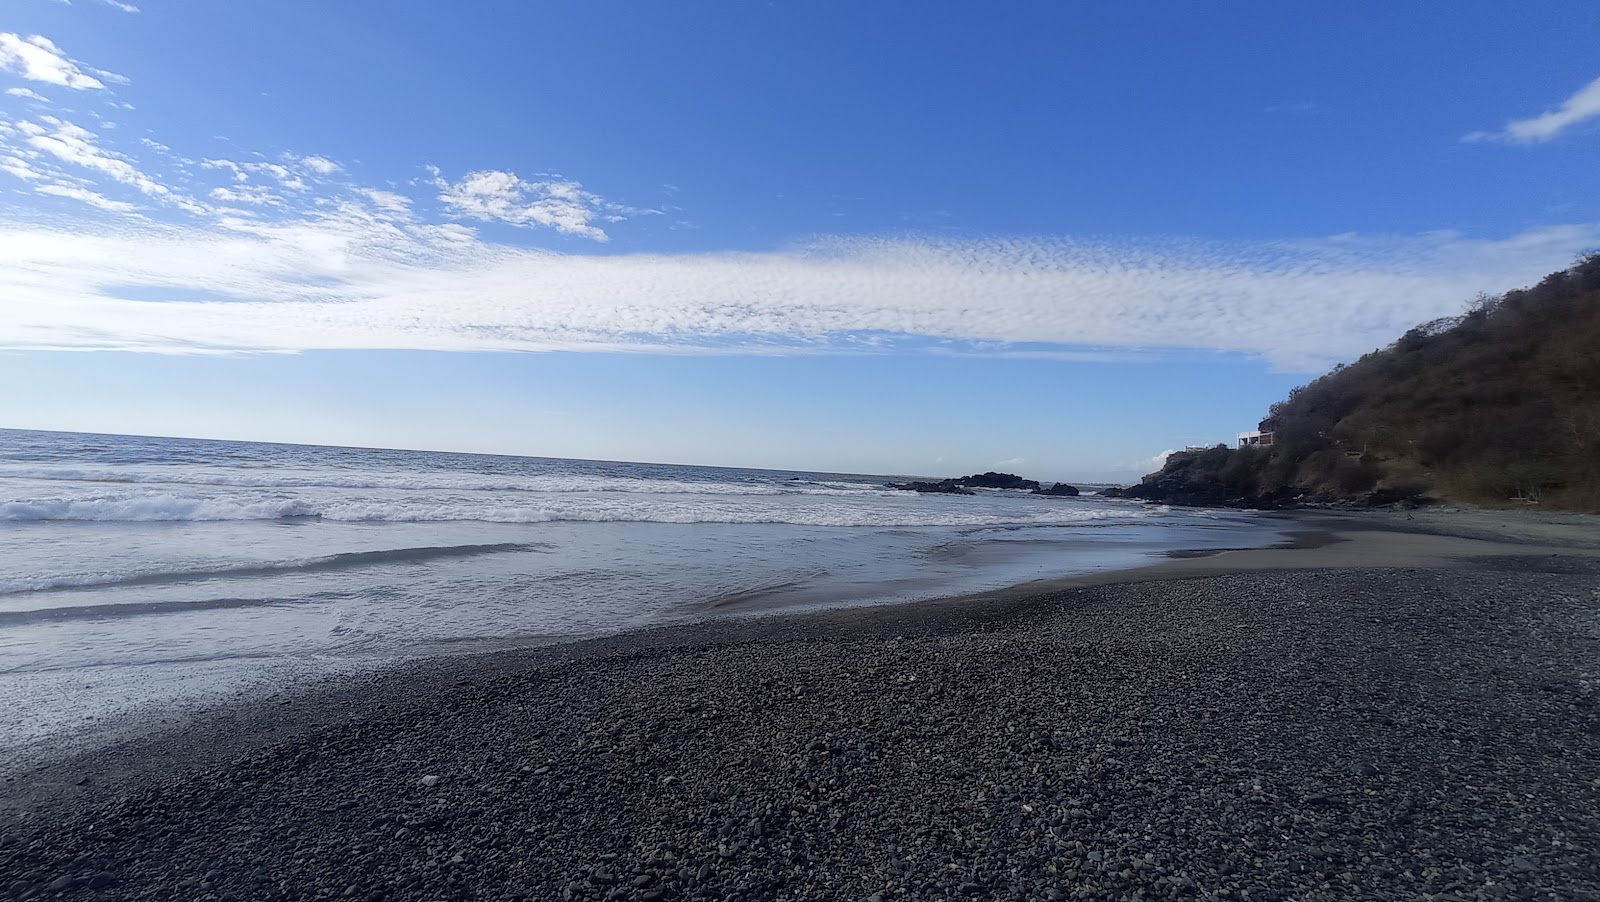 Tamarindillo beach'in fotoğrafı siyah kum ve çakıl yüzey ile